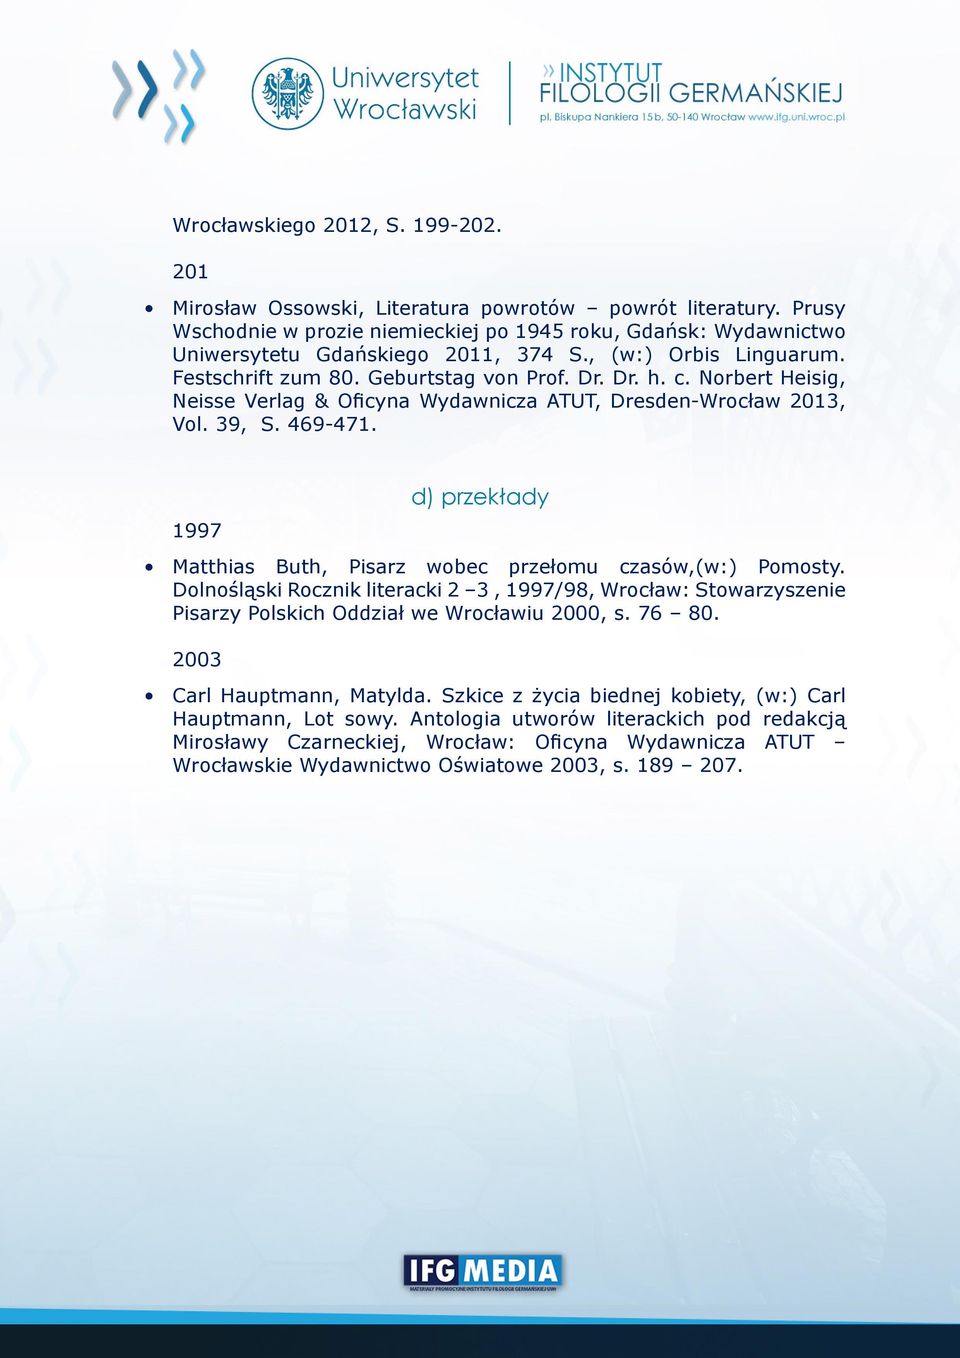 Norbert Heisig, Neisse Verlag & Oficyna Wydawnicza ATUT, Dresden-Wrocław 2013, Vol. 39, S. 469-471. 1997 d) przekłady Matthias Buth, Pisarz wobec przełomu czasów,(w:) Pomosty.